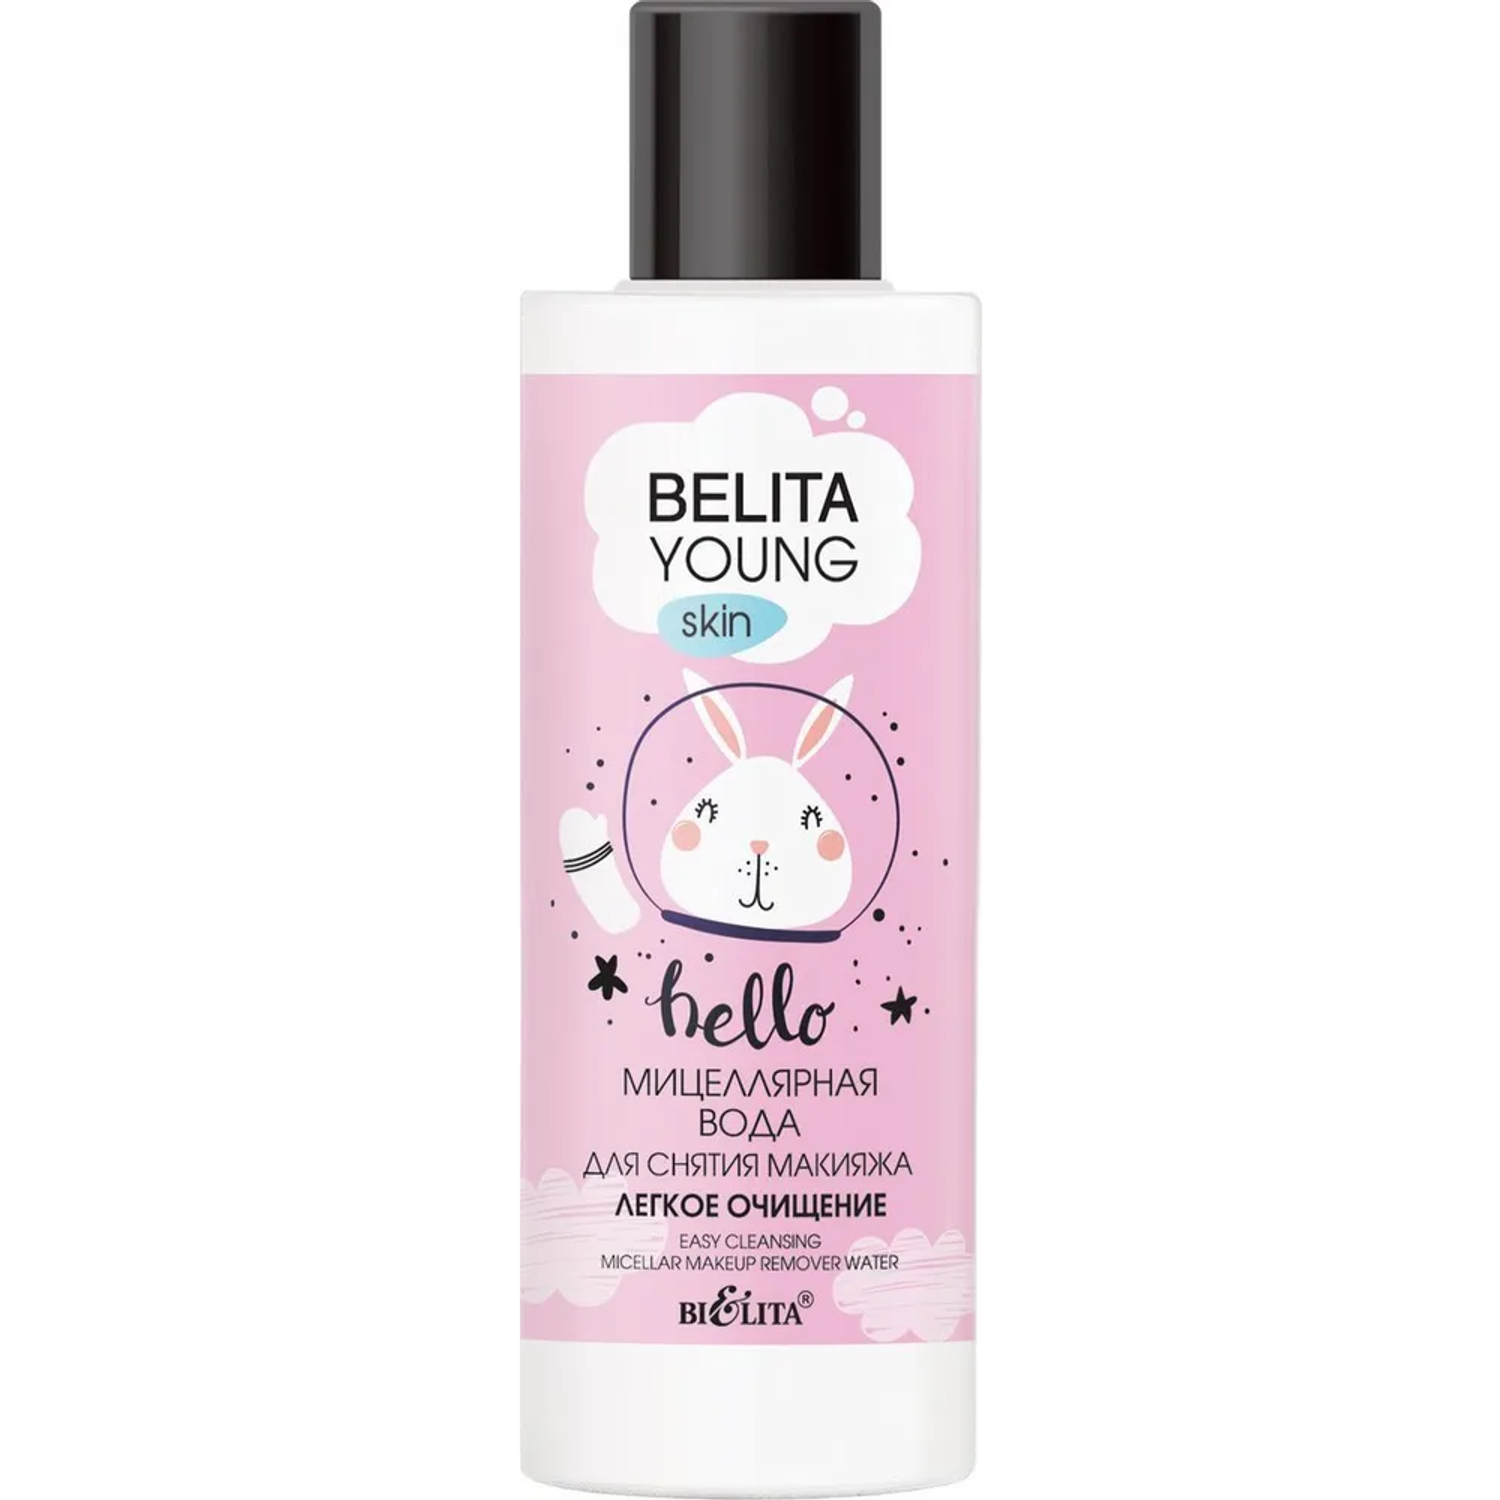 Мицеллярная вода БЕЛИТА belita young skin для снятия макияжа легкое очищение 150 мл - фото 1